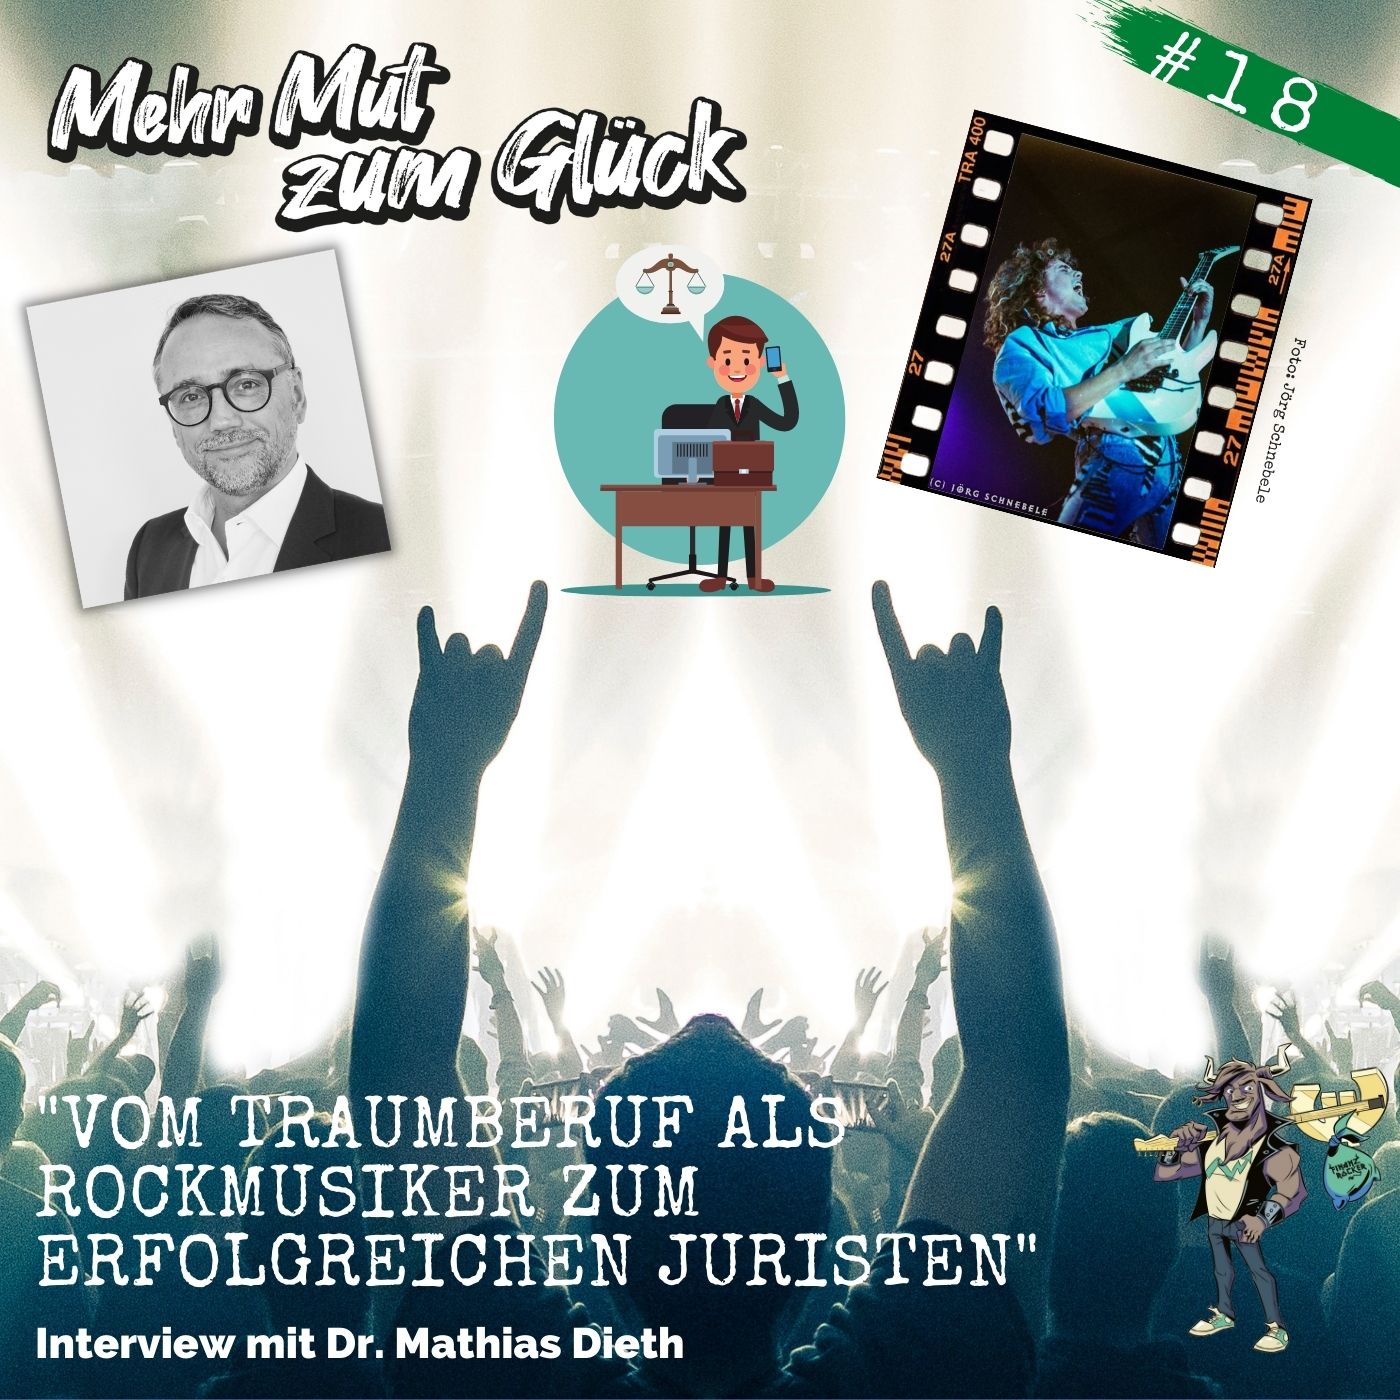 Folge 18: ”Vom Traumberuf als Rockmusiker zum erfolgreichen Rechtsanwalt” - Interview mit Dr. Mathias Dieth